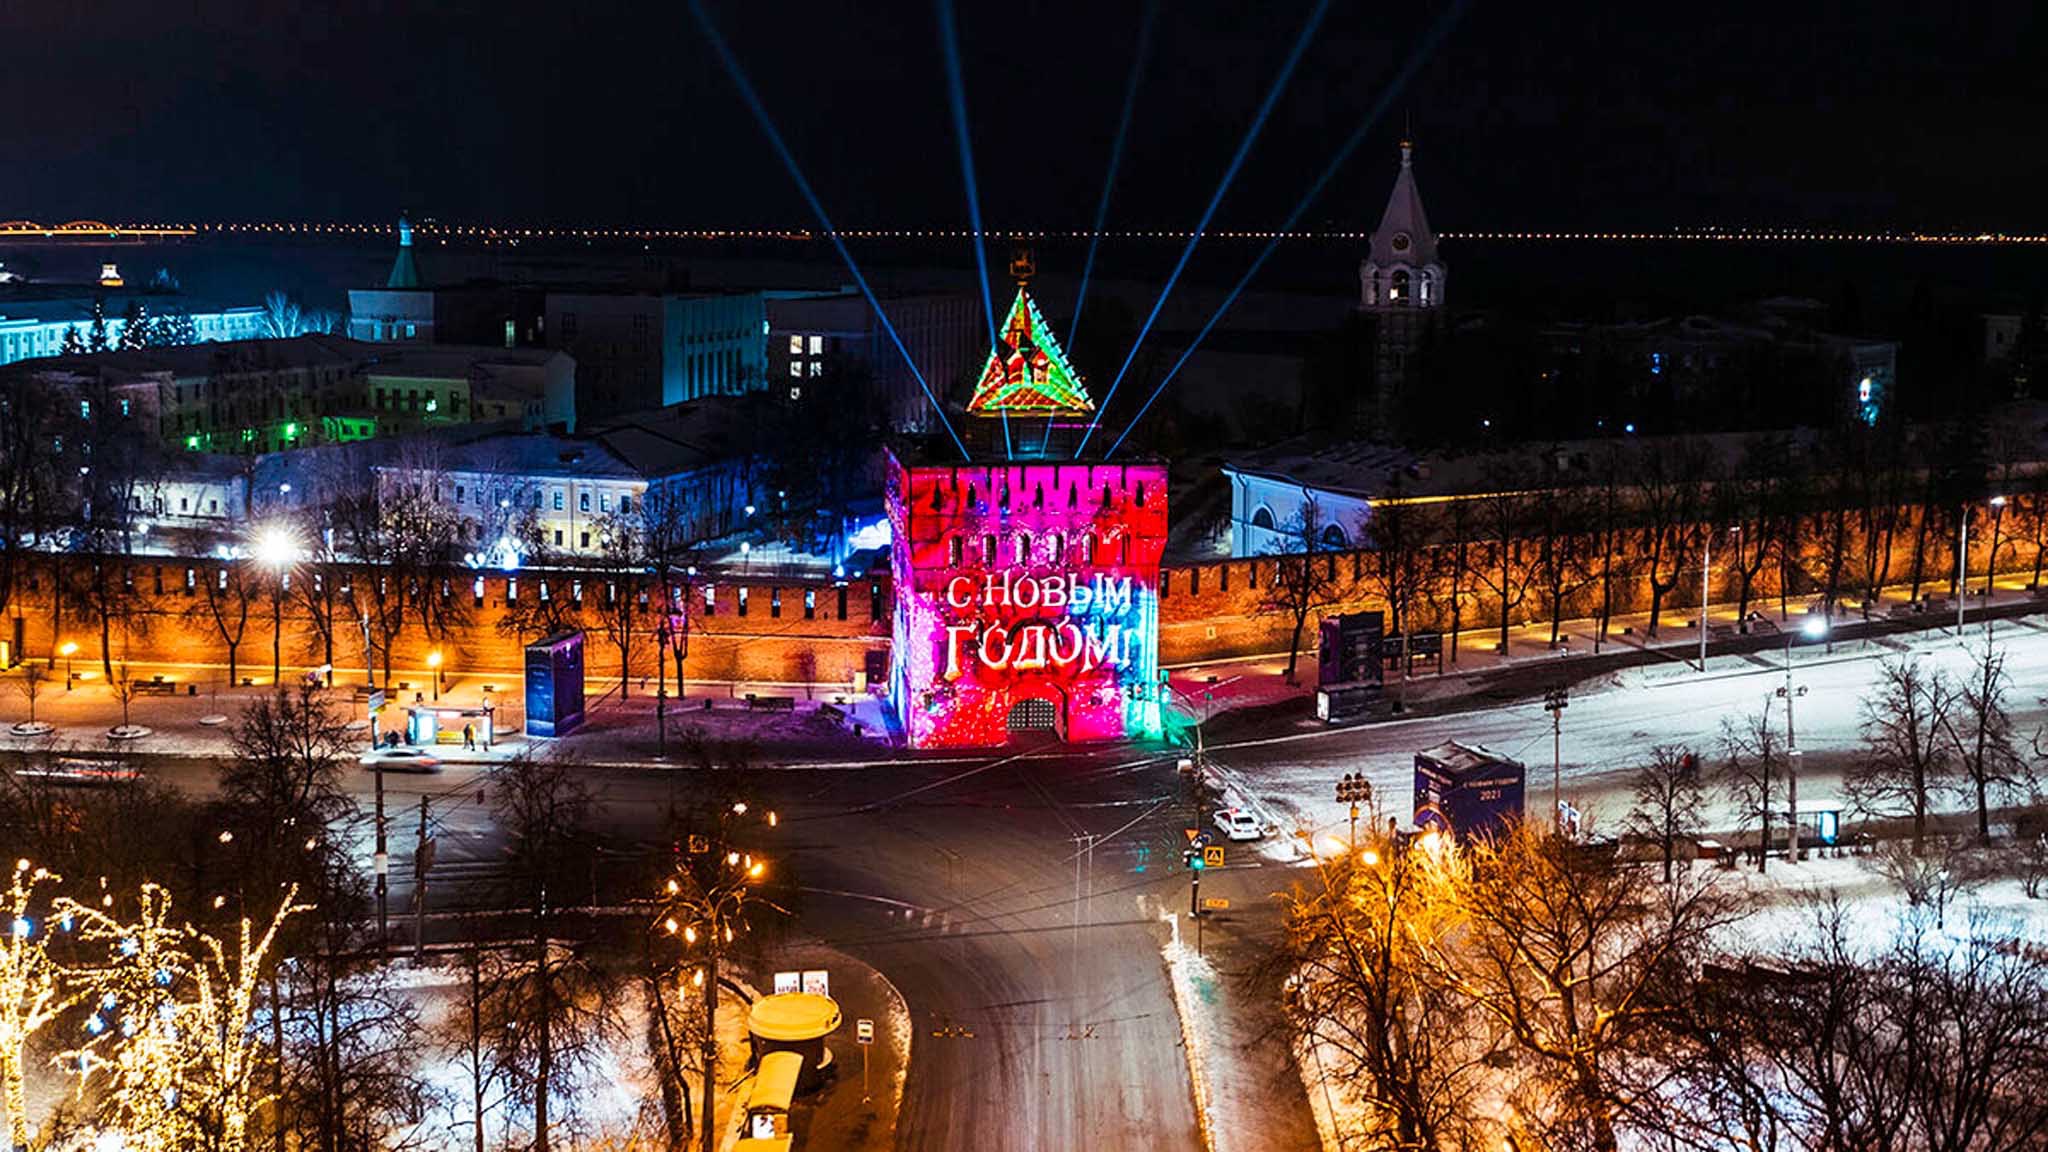 Столица нового года россии